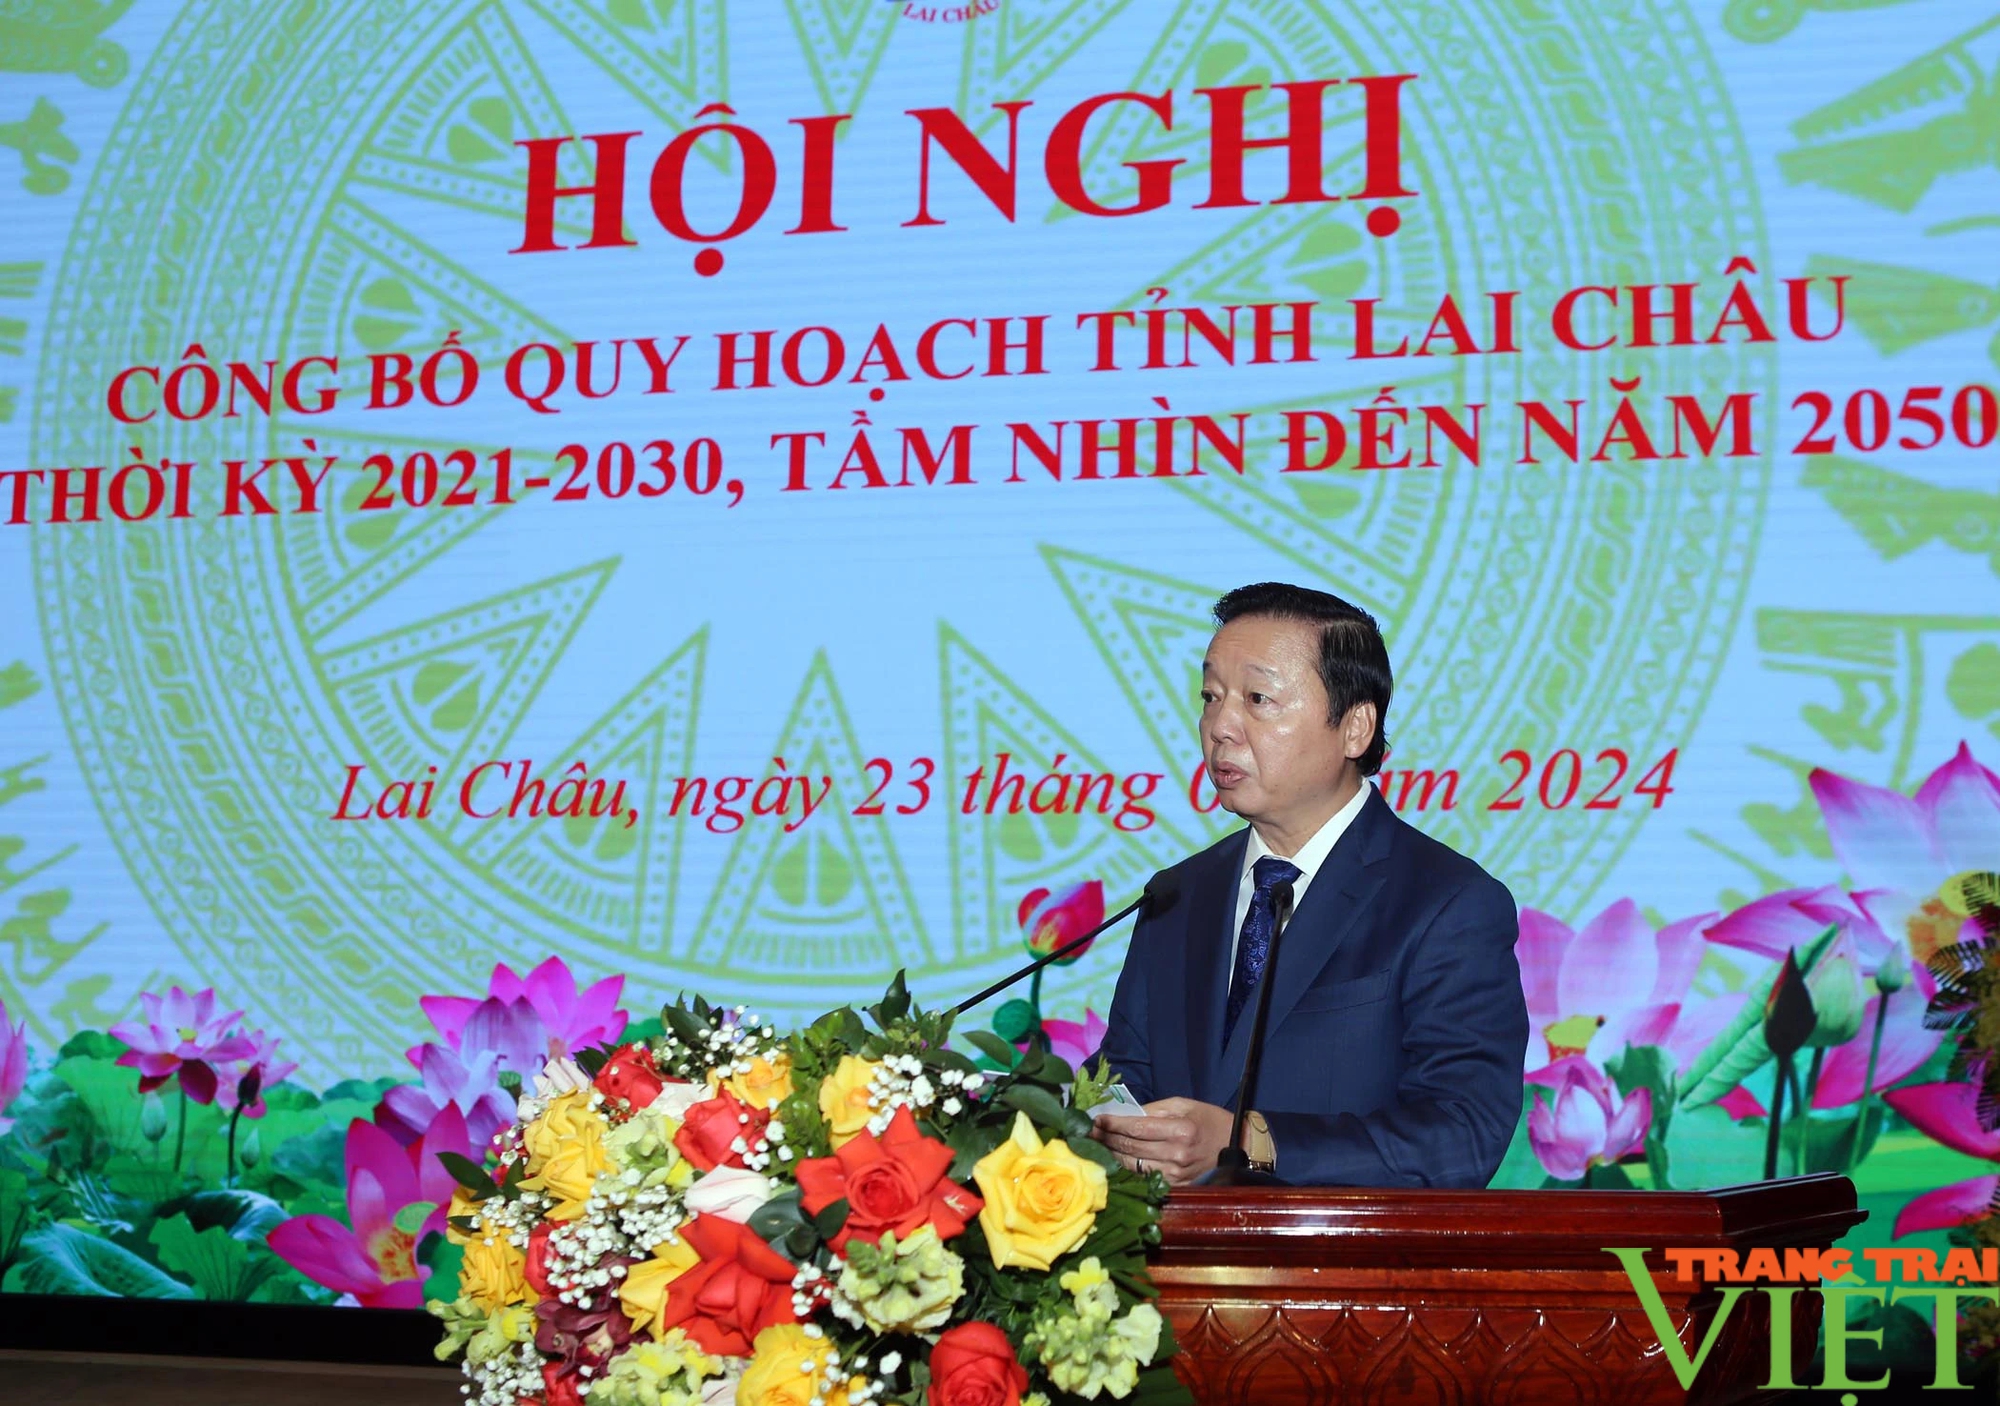 Phó Thủ tướng Trần Hồng Hà dự Hội nghị công bố Quy hoạch tỉnh Lai Châu- Ảnh 1.